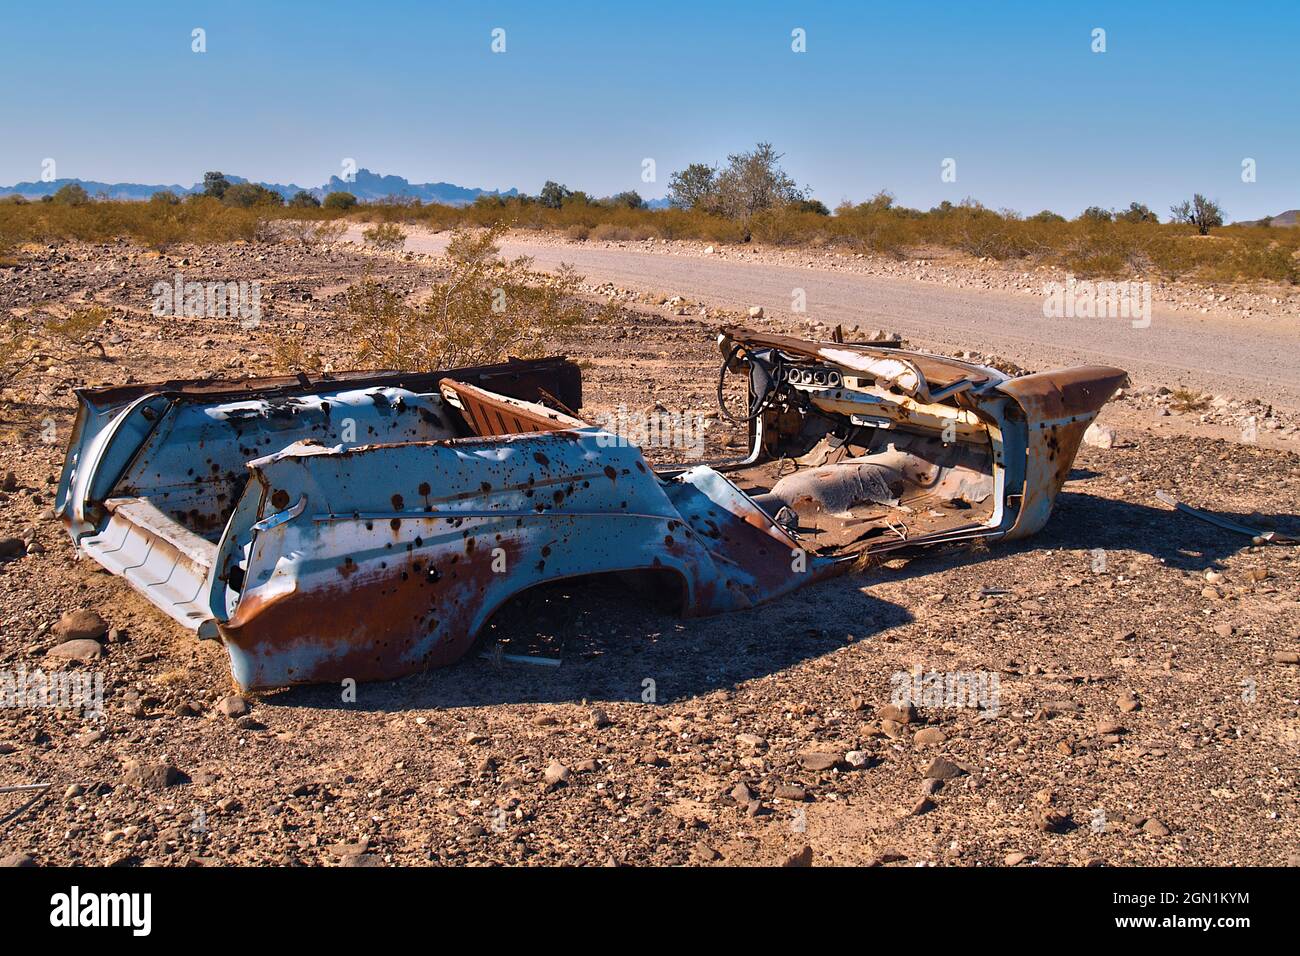 Die gespenstische Hülle eines alten Autos, das auf einer unbefestigten Straße in einem abgelegenen Gebiet im Westen von Arizona liegt. Stockfoto